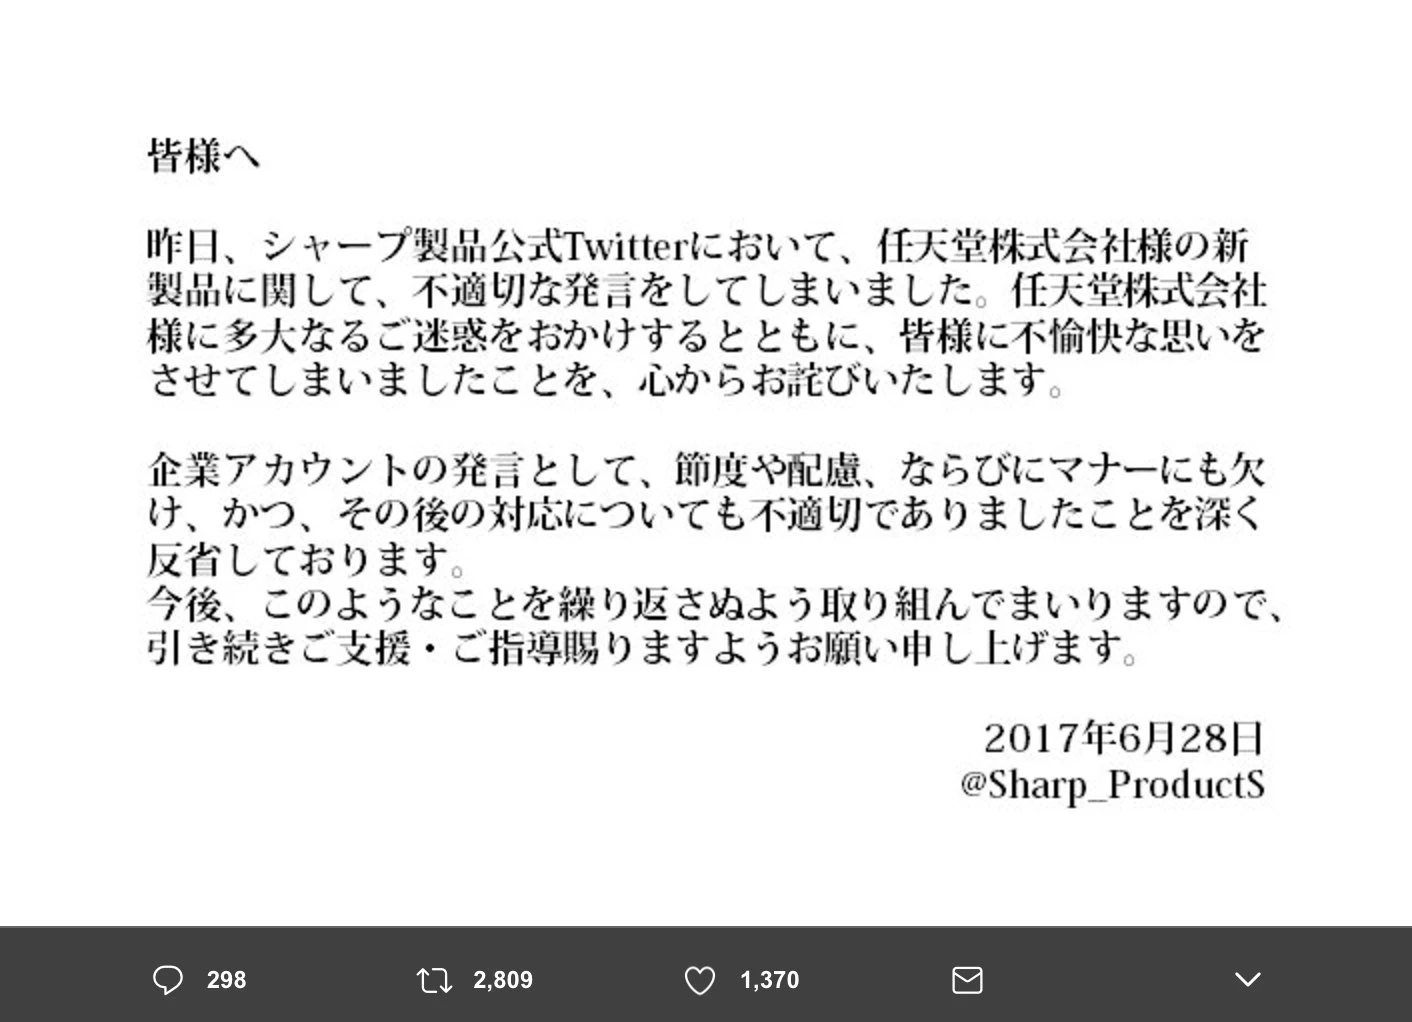 画像は、シャープ製品公式Twitter（@SHARP_ProductS）よりスクリーンショット